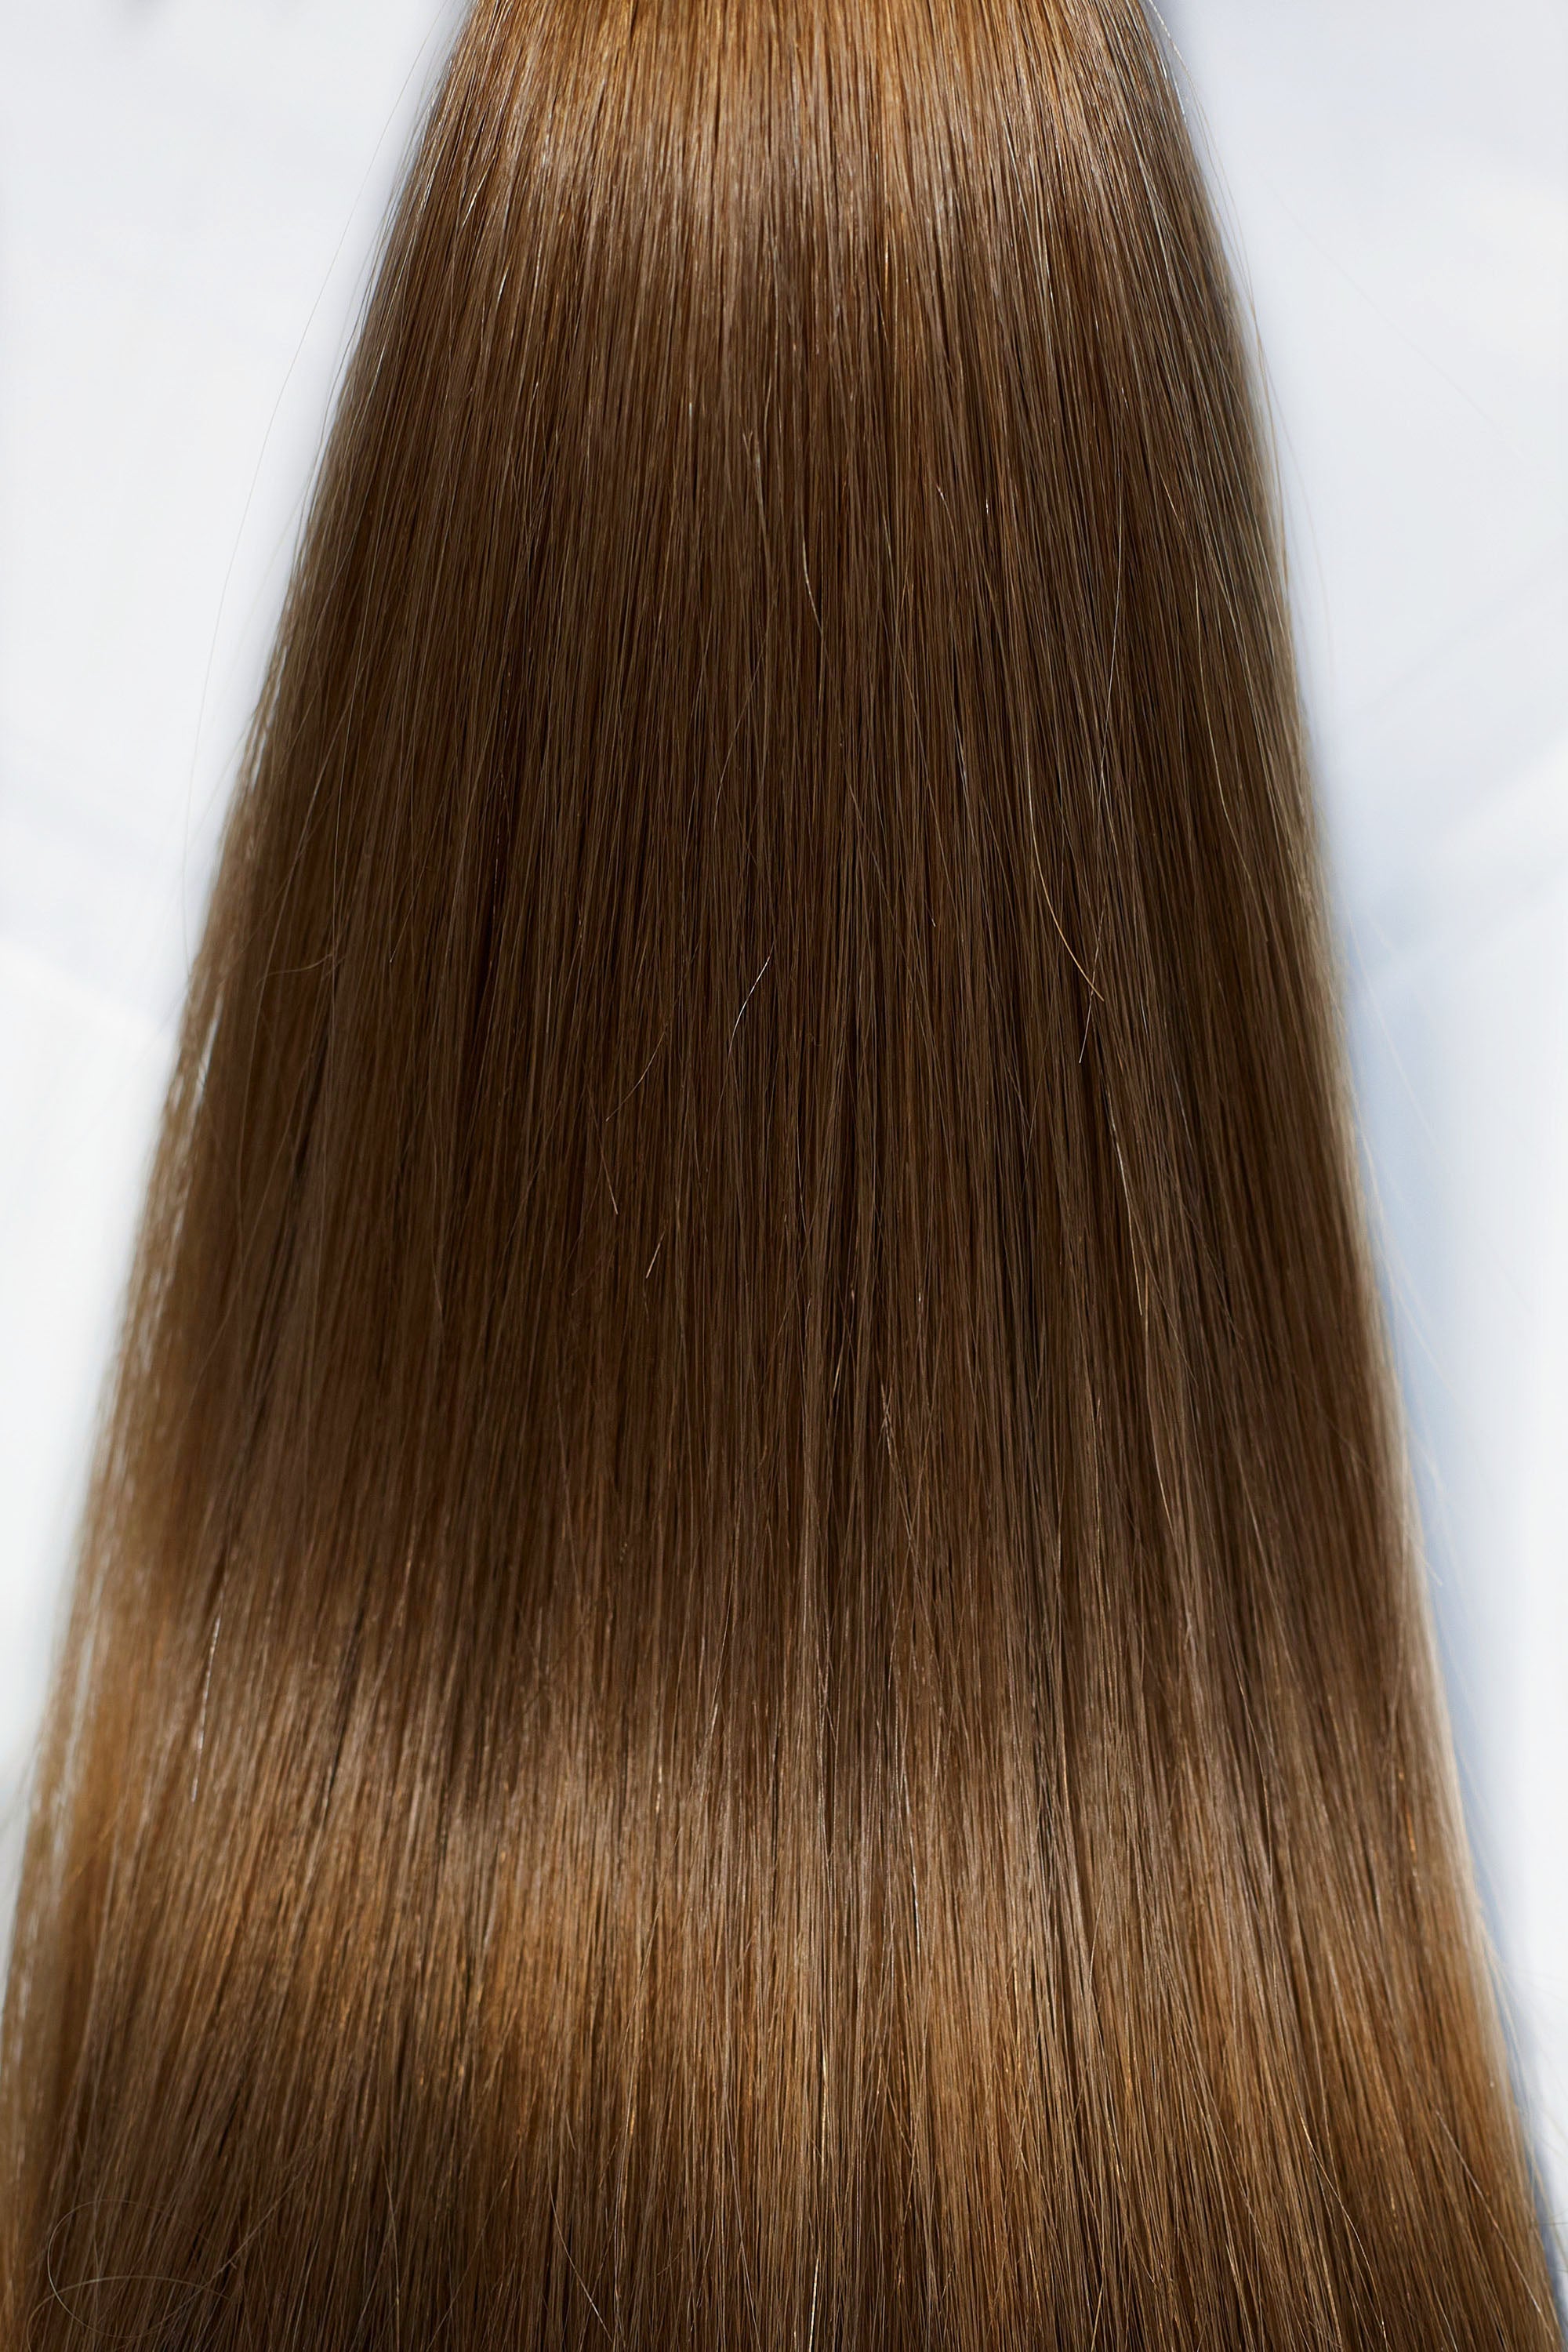 Behair professional Bulk hair "Premium" 20" (50cm) Natural Straight Chestnut #6 - 25g hair extensions